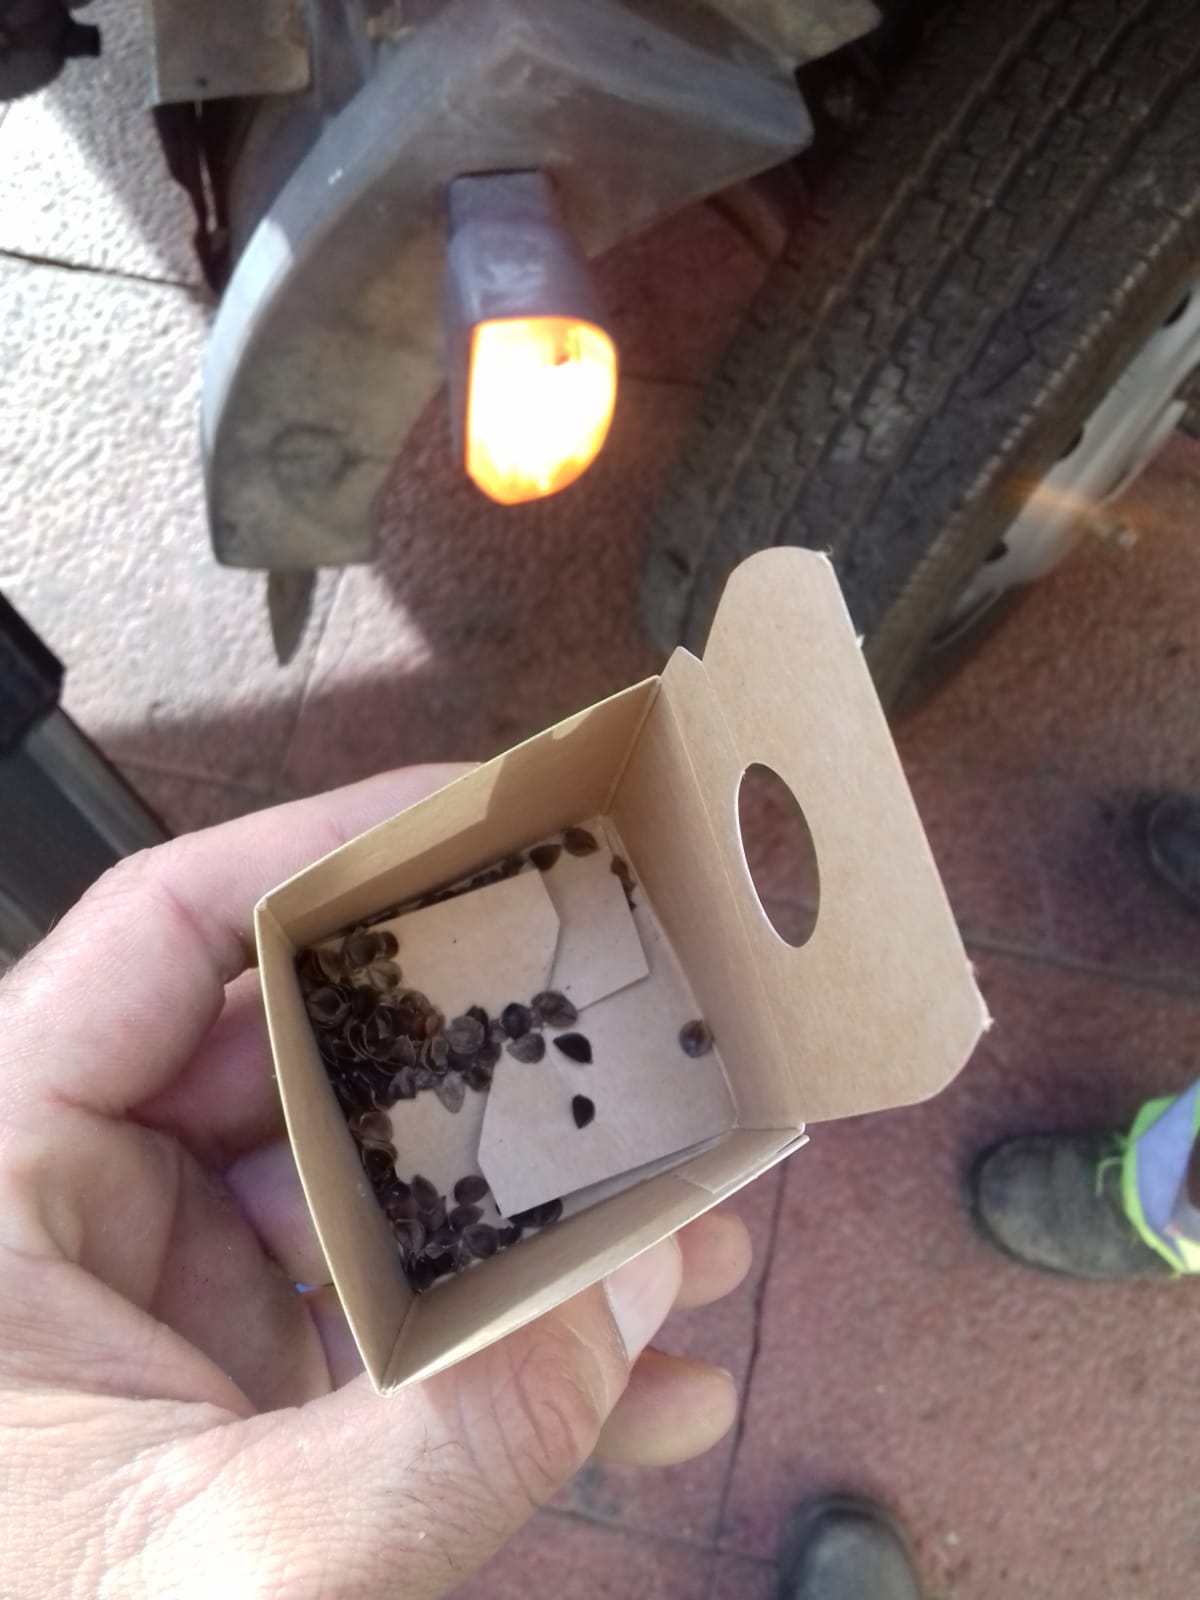 Tamaño de los insectos beneficiosos. En las cajas puede haber larvas, a punto de eclosionar o eclosionadas. Imagen: Ayto. de Murcia